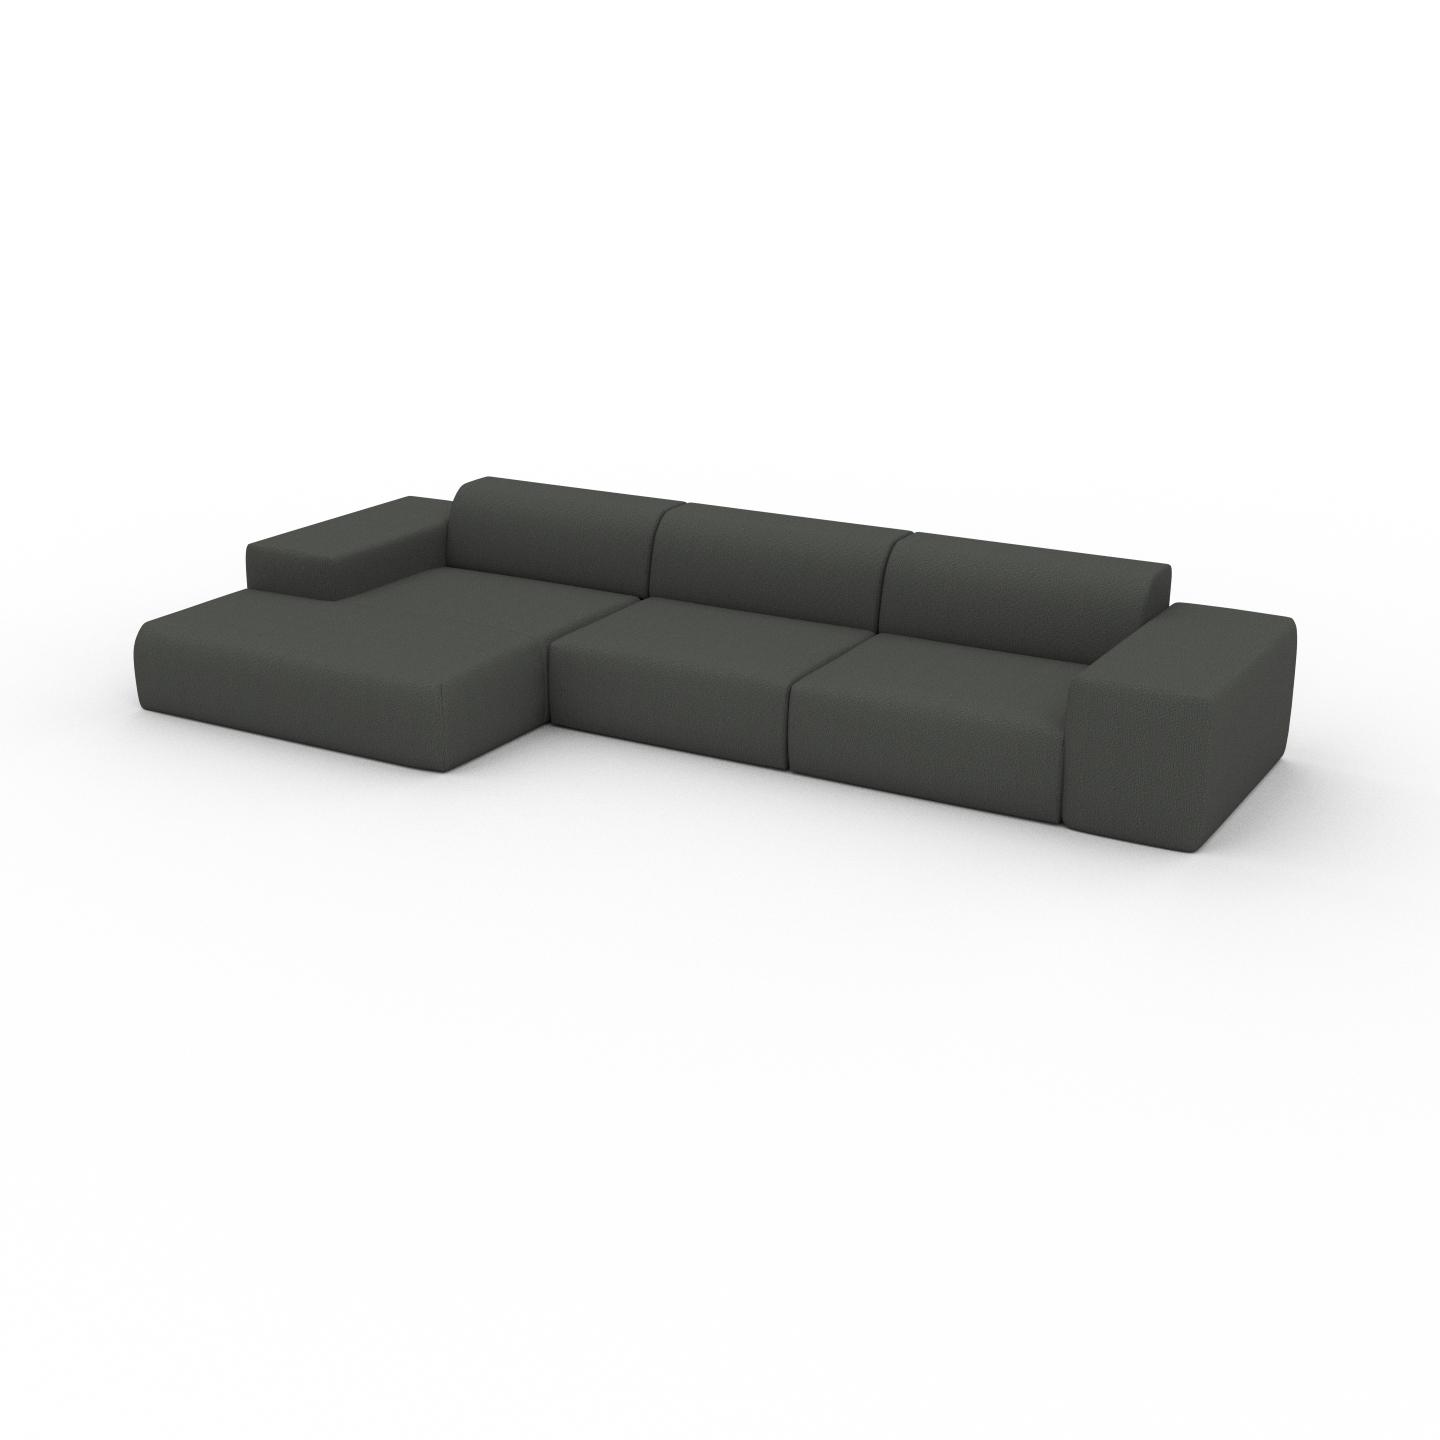 MYCS Ecksofa Steingrau - Flexible Designer-Polsterecke, L-Form: Beste Qualität, einzigartiges Design - 396 x 72 x 168 cm, konfigurierbar